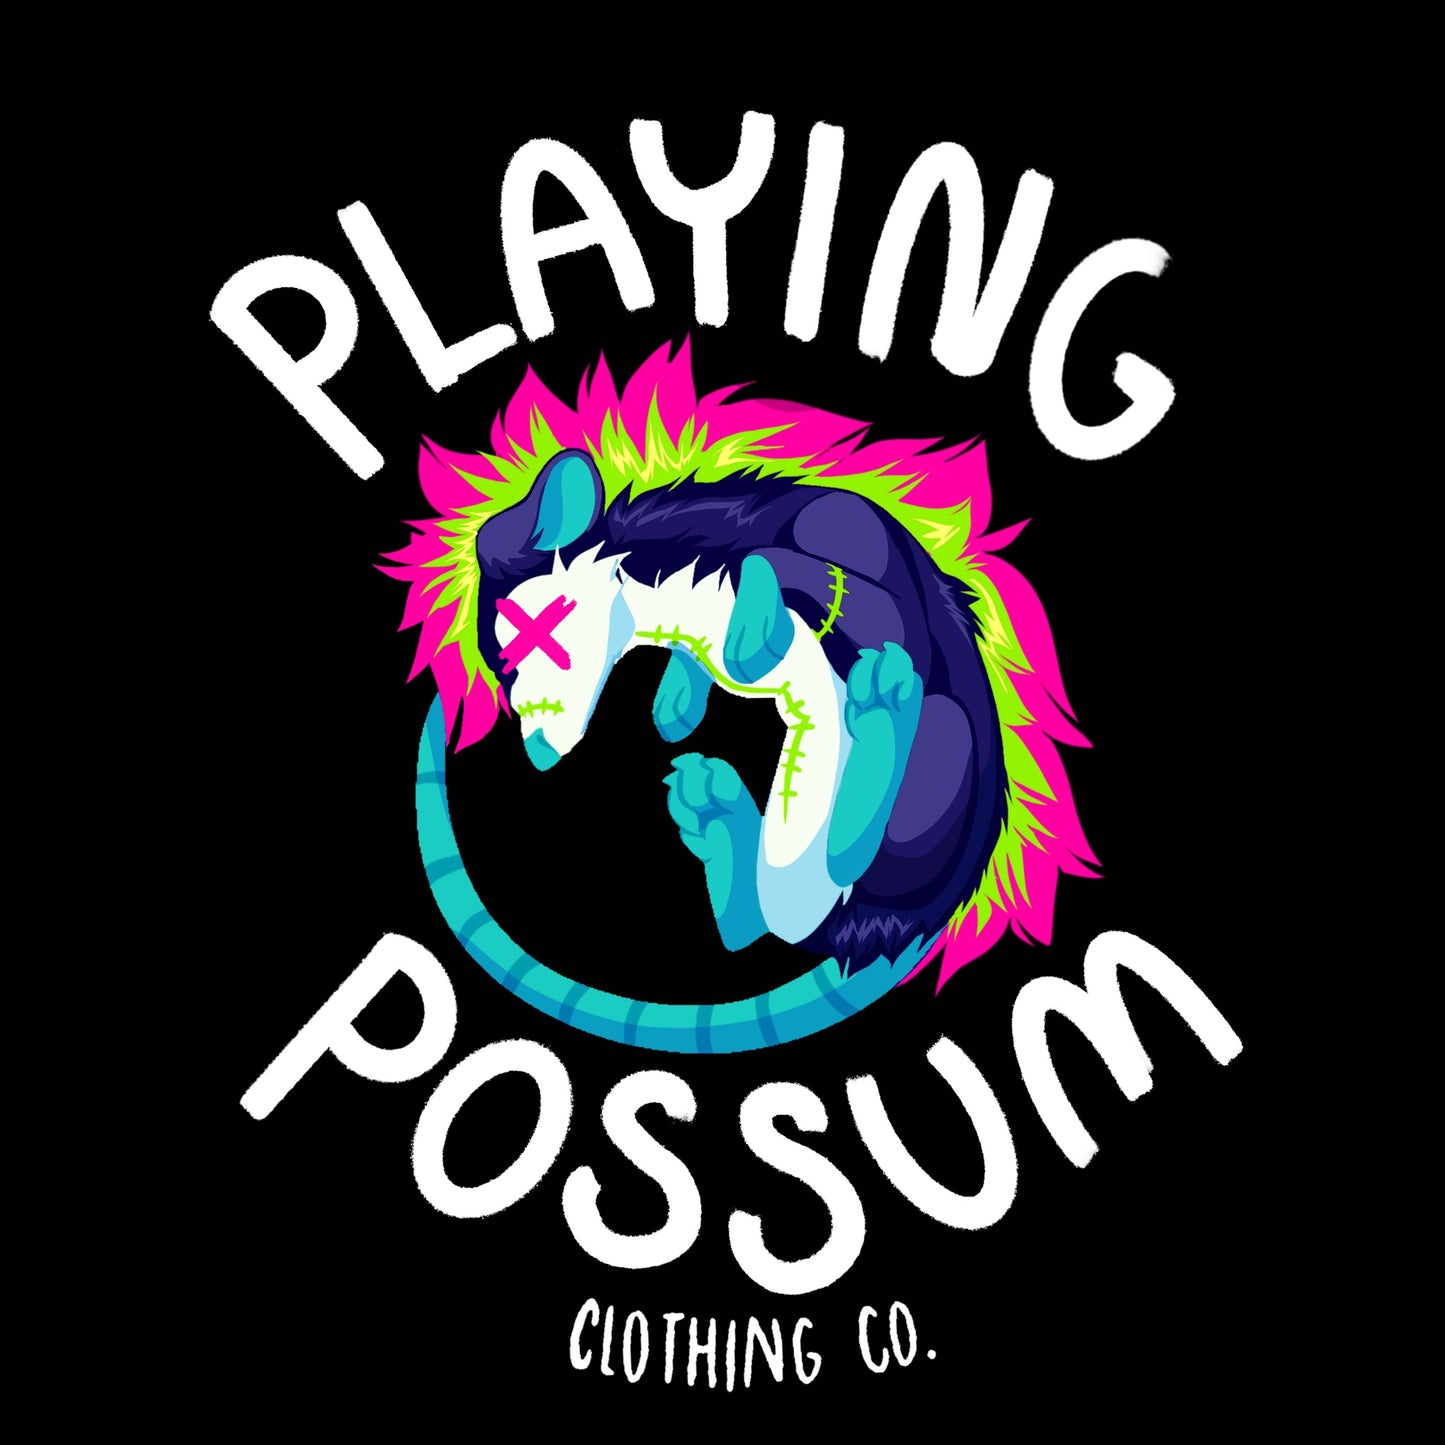 Playing Possum Logo T-Shirt